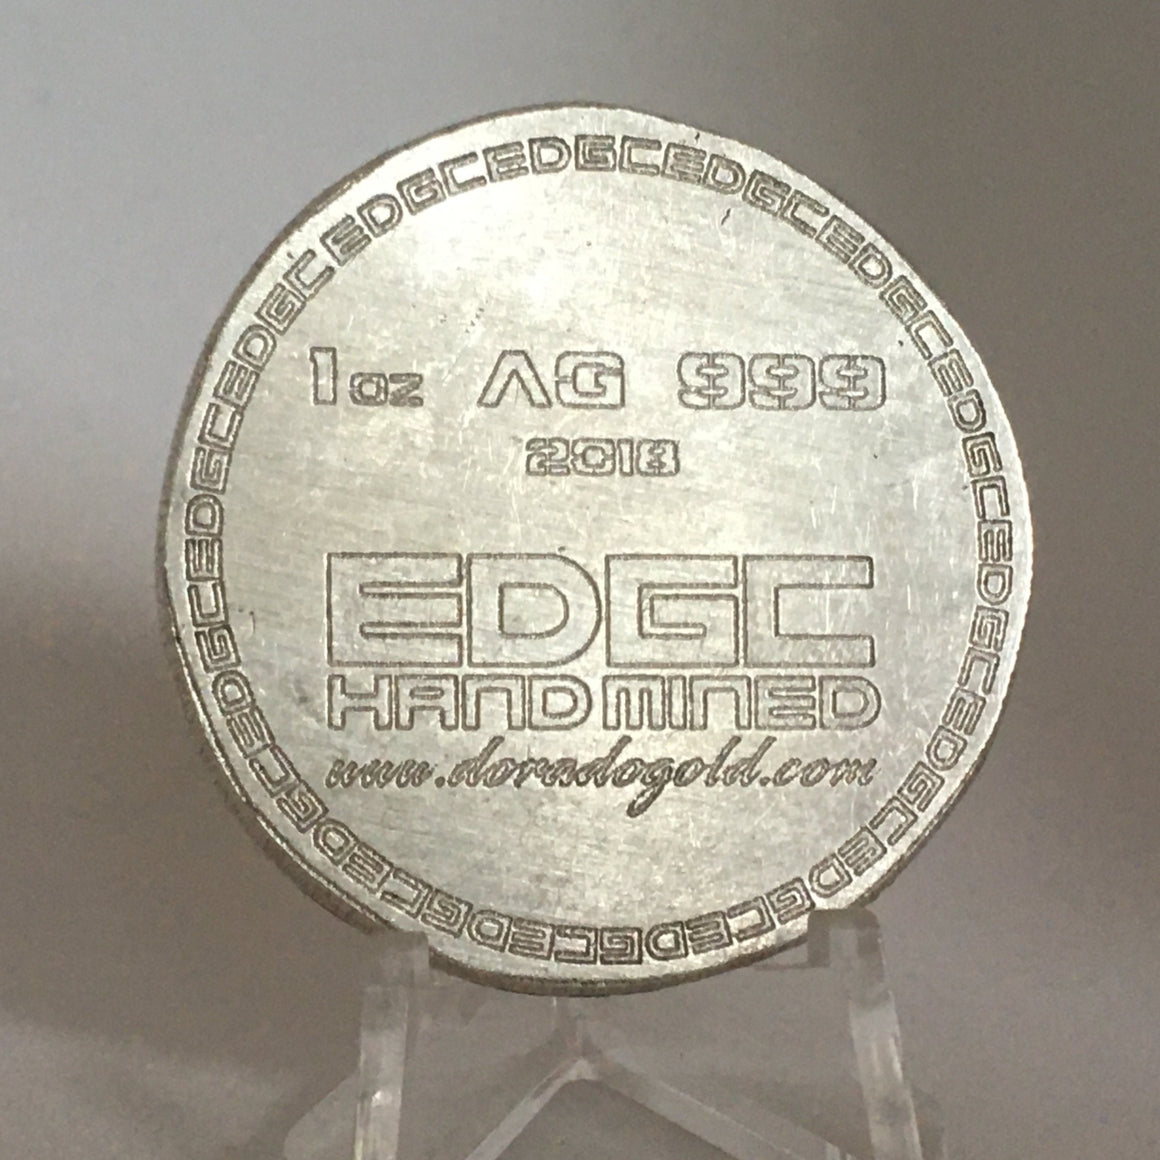 2018 DoradoGold EDGC Hand Mined 1oz, .999 Fine Silver Round